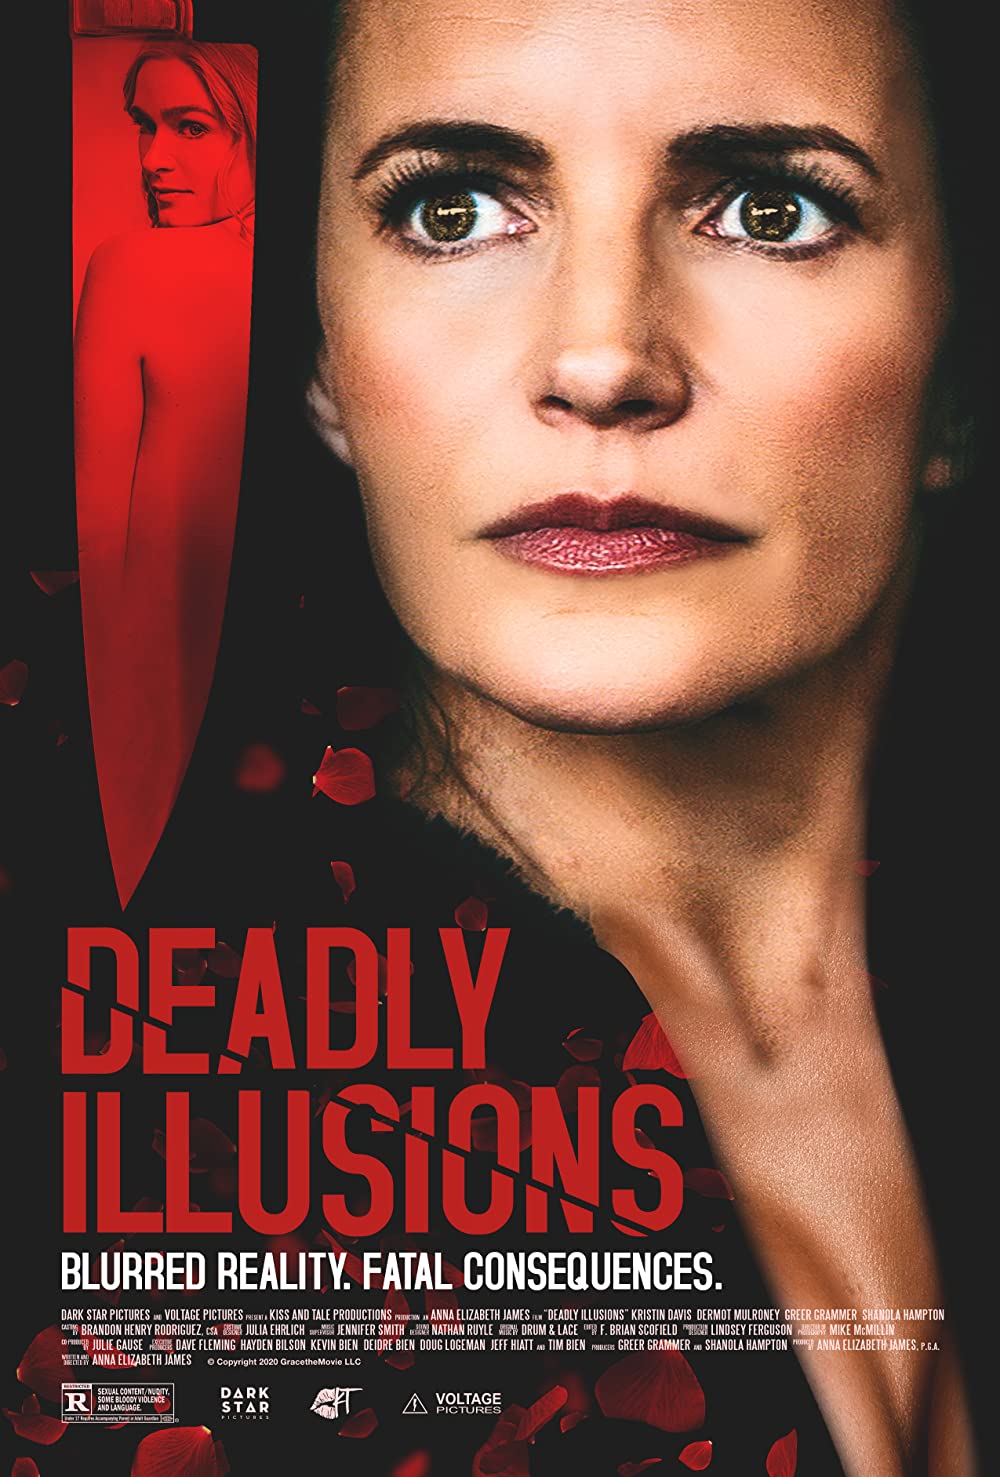 Filmbeschreibung zu Deadly Illusions